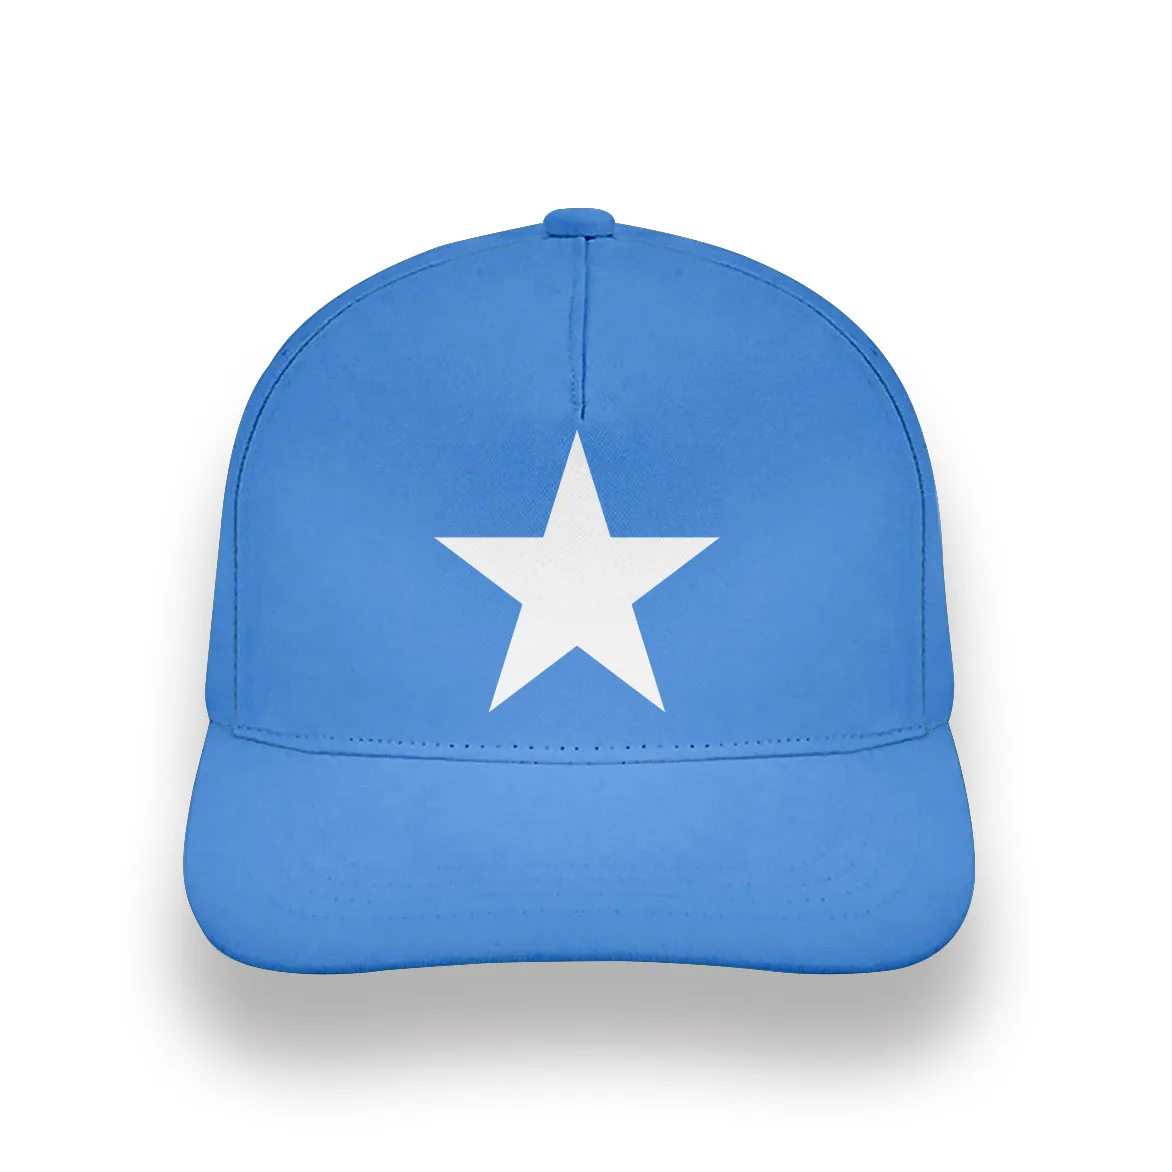 SOMALİ şapka dıy ücretsiz özel fotoğraf adı numarası som kap ulusal bayrak soomaaliya federal cumhuriyeti somali baskı metin beyzbol şapkası